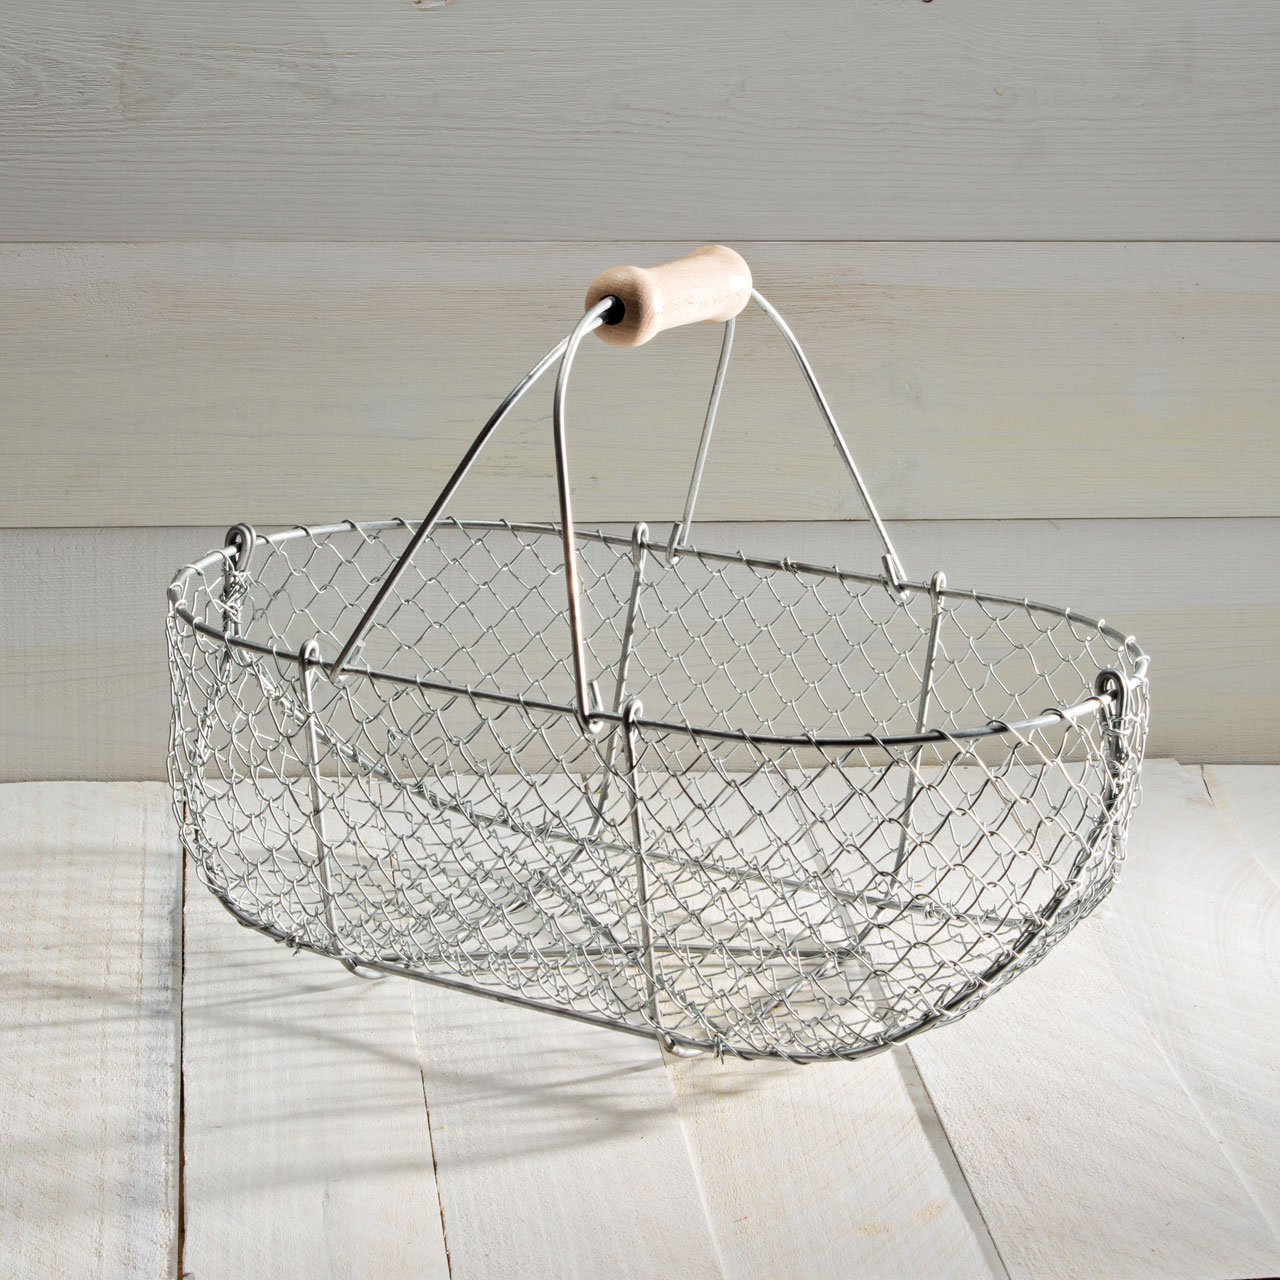 Vintage Wire Mesh Fish Trap Basket , 2 Tiered Wire Hanging Basket